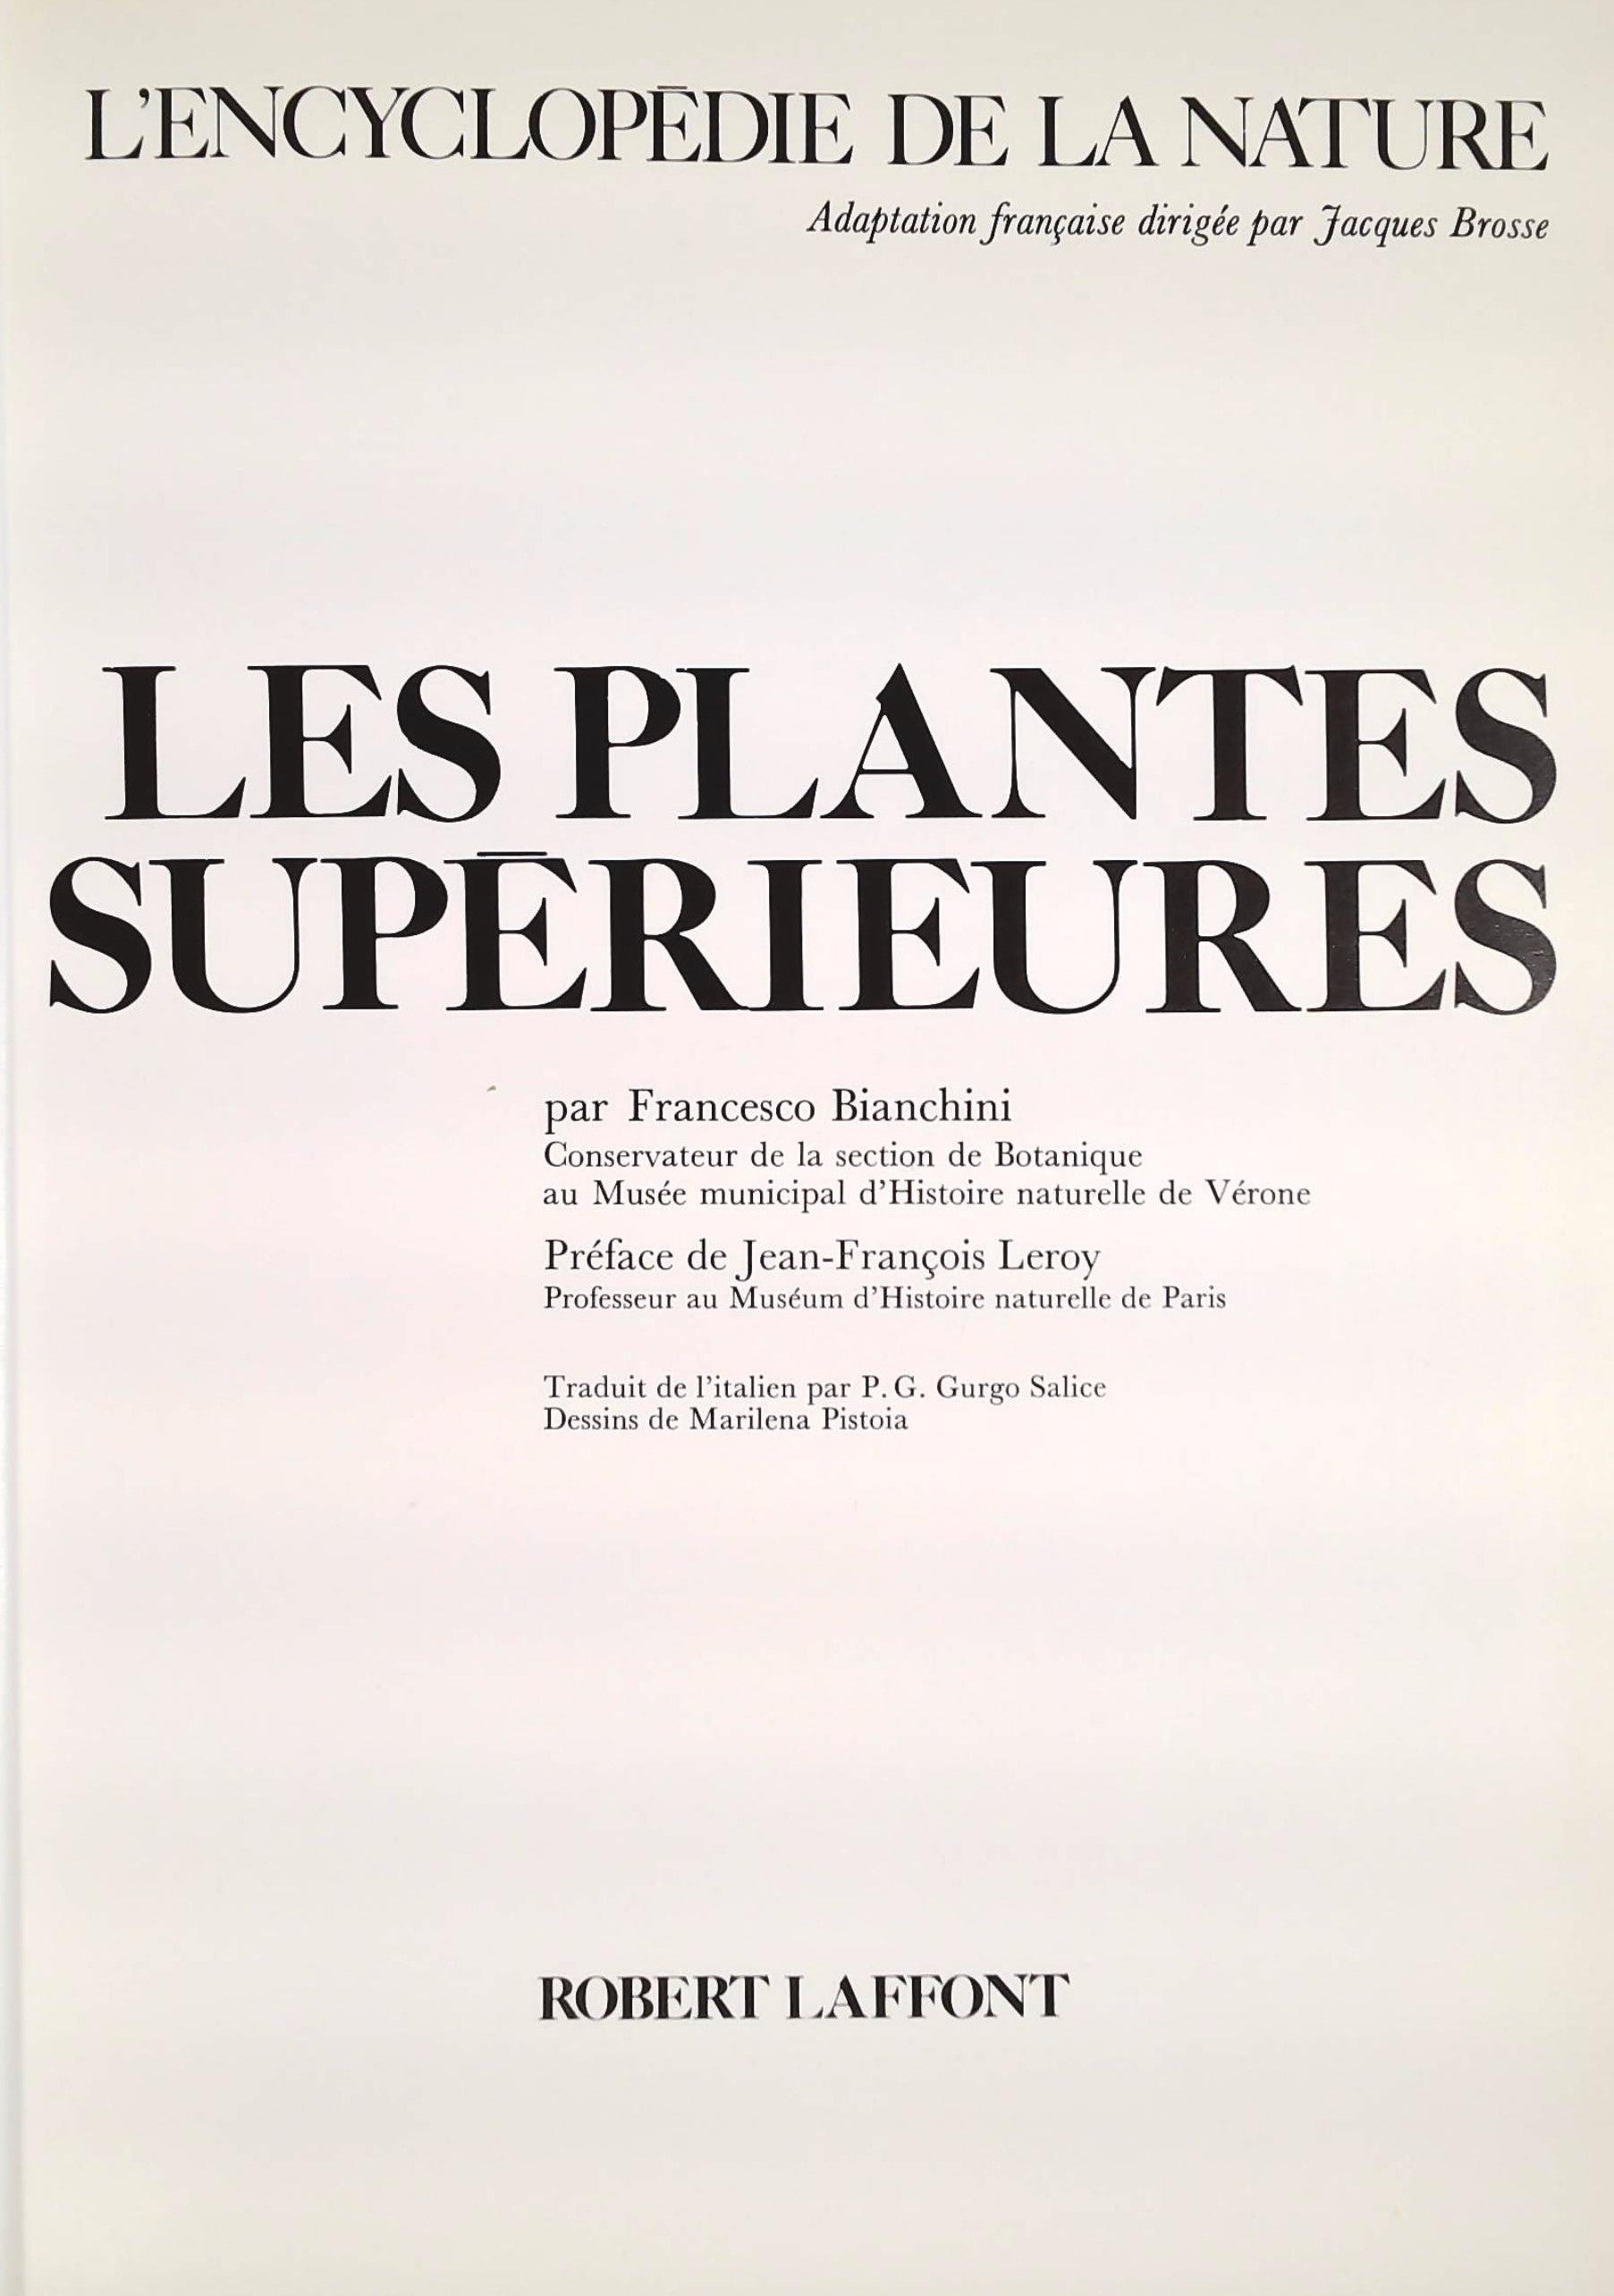 L'encyclopédie de la nature : Les plantes supérieures (Francesco Bianchini)